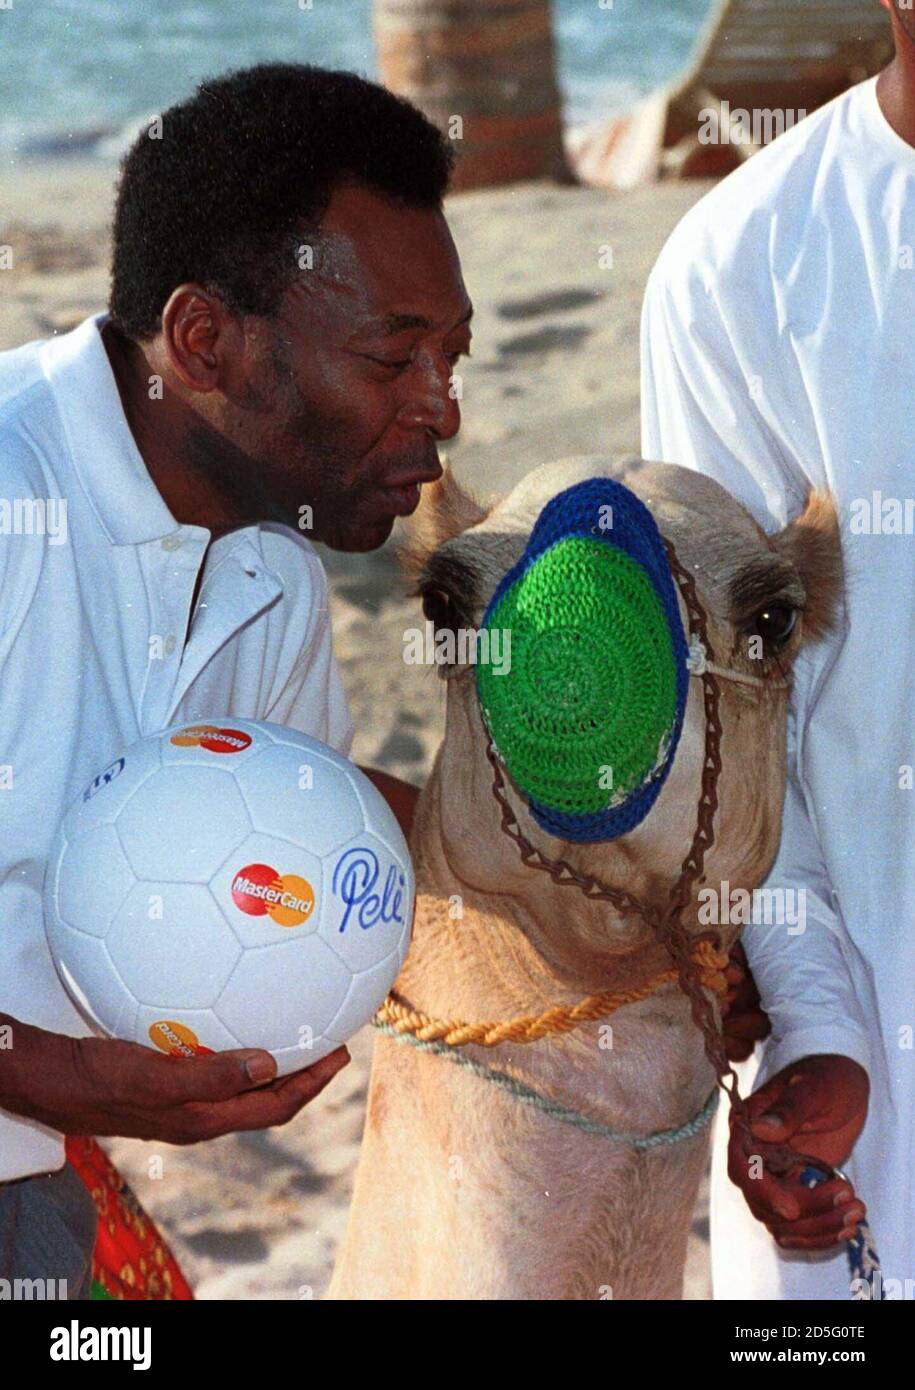 Pele Beach Soccer Ball by Pele 